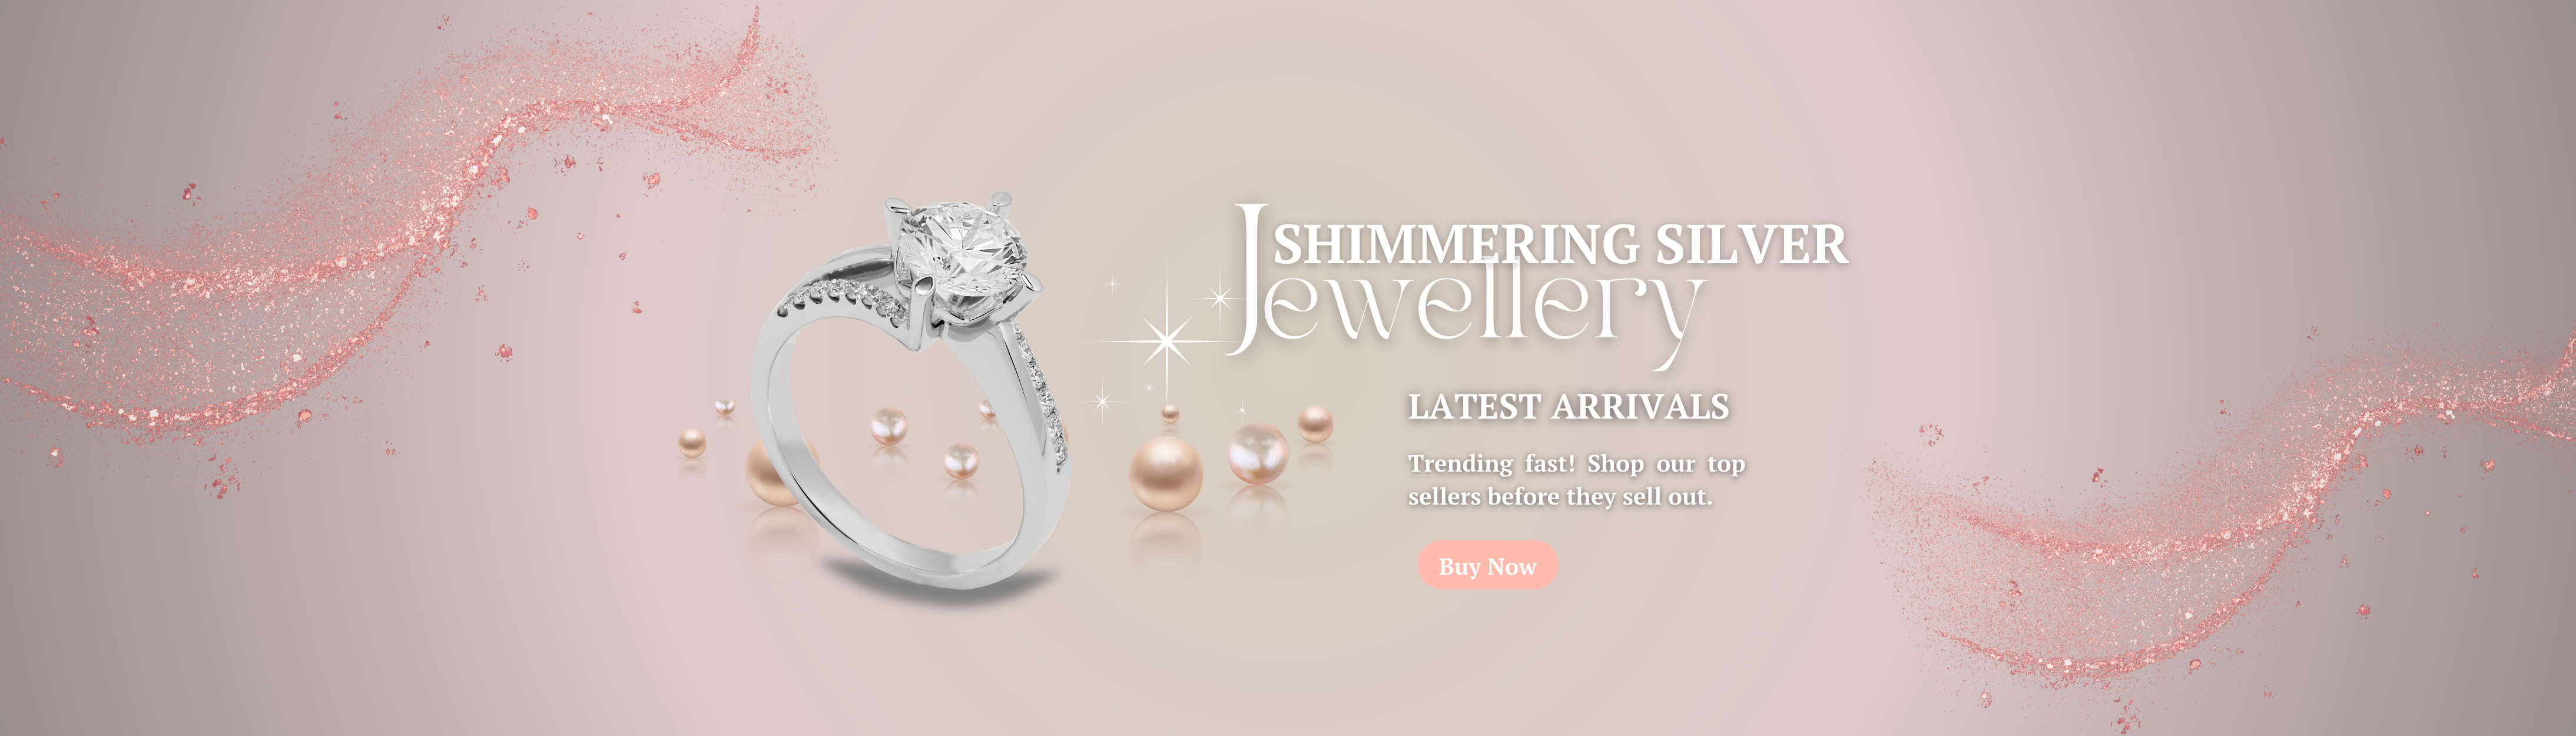 Peach Rose Gold Modern Jewelry Facebook Ad (1)